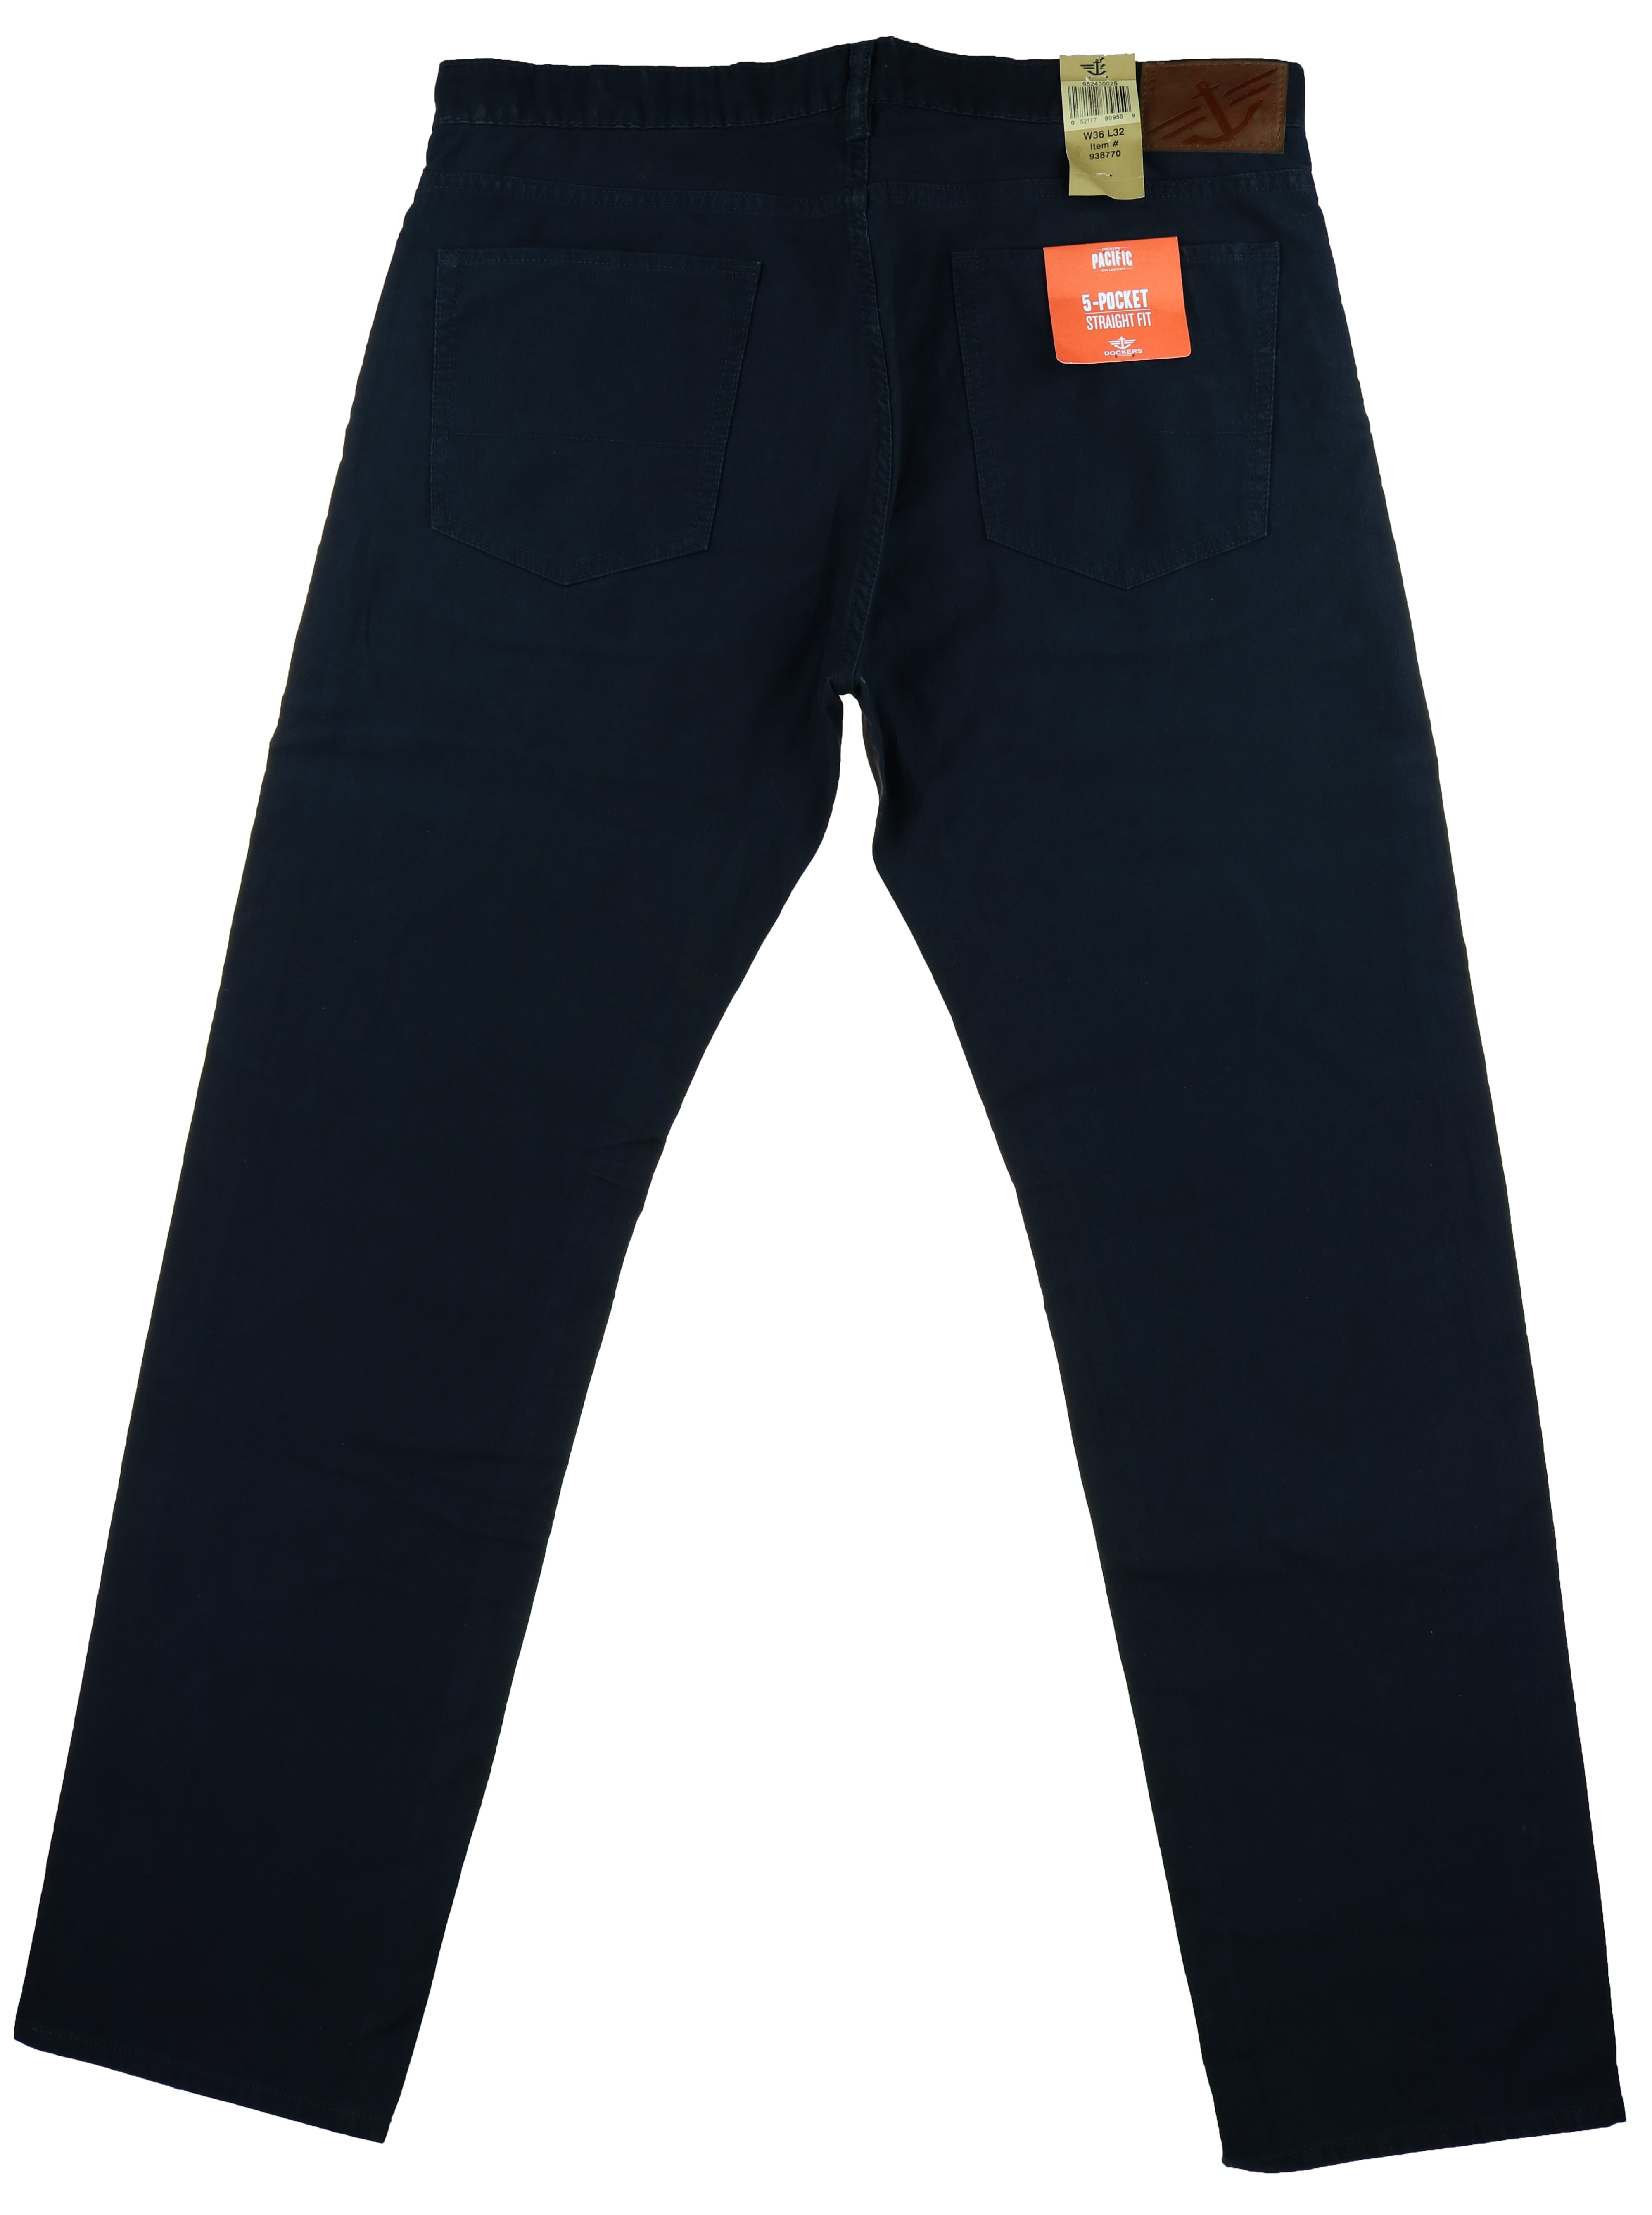 Wetenschap Aantrekkingskracht Stadion Dockers Pacific Collection Mens 5-Pocket Straight Fit Pants (Navy, 40X32) -  Walmart.com